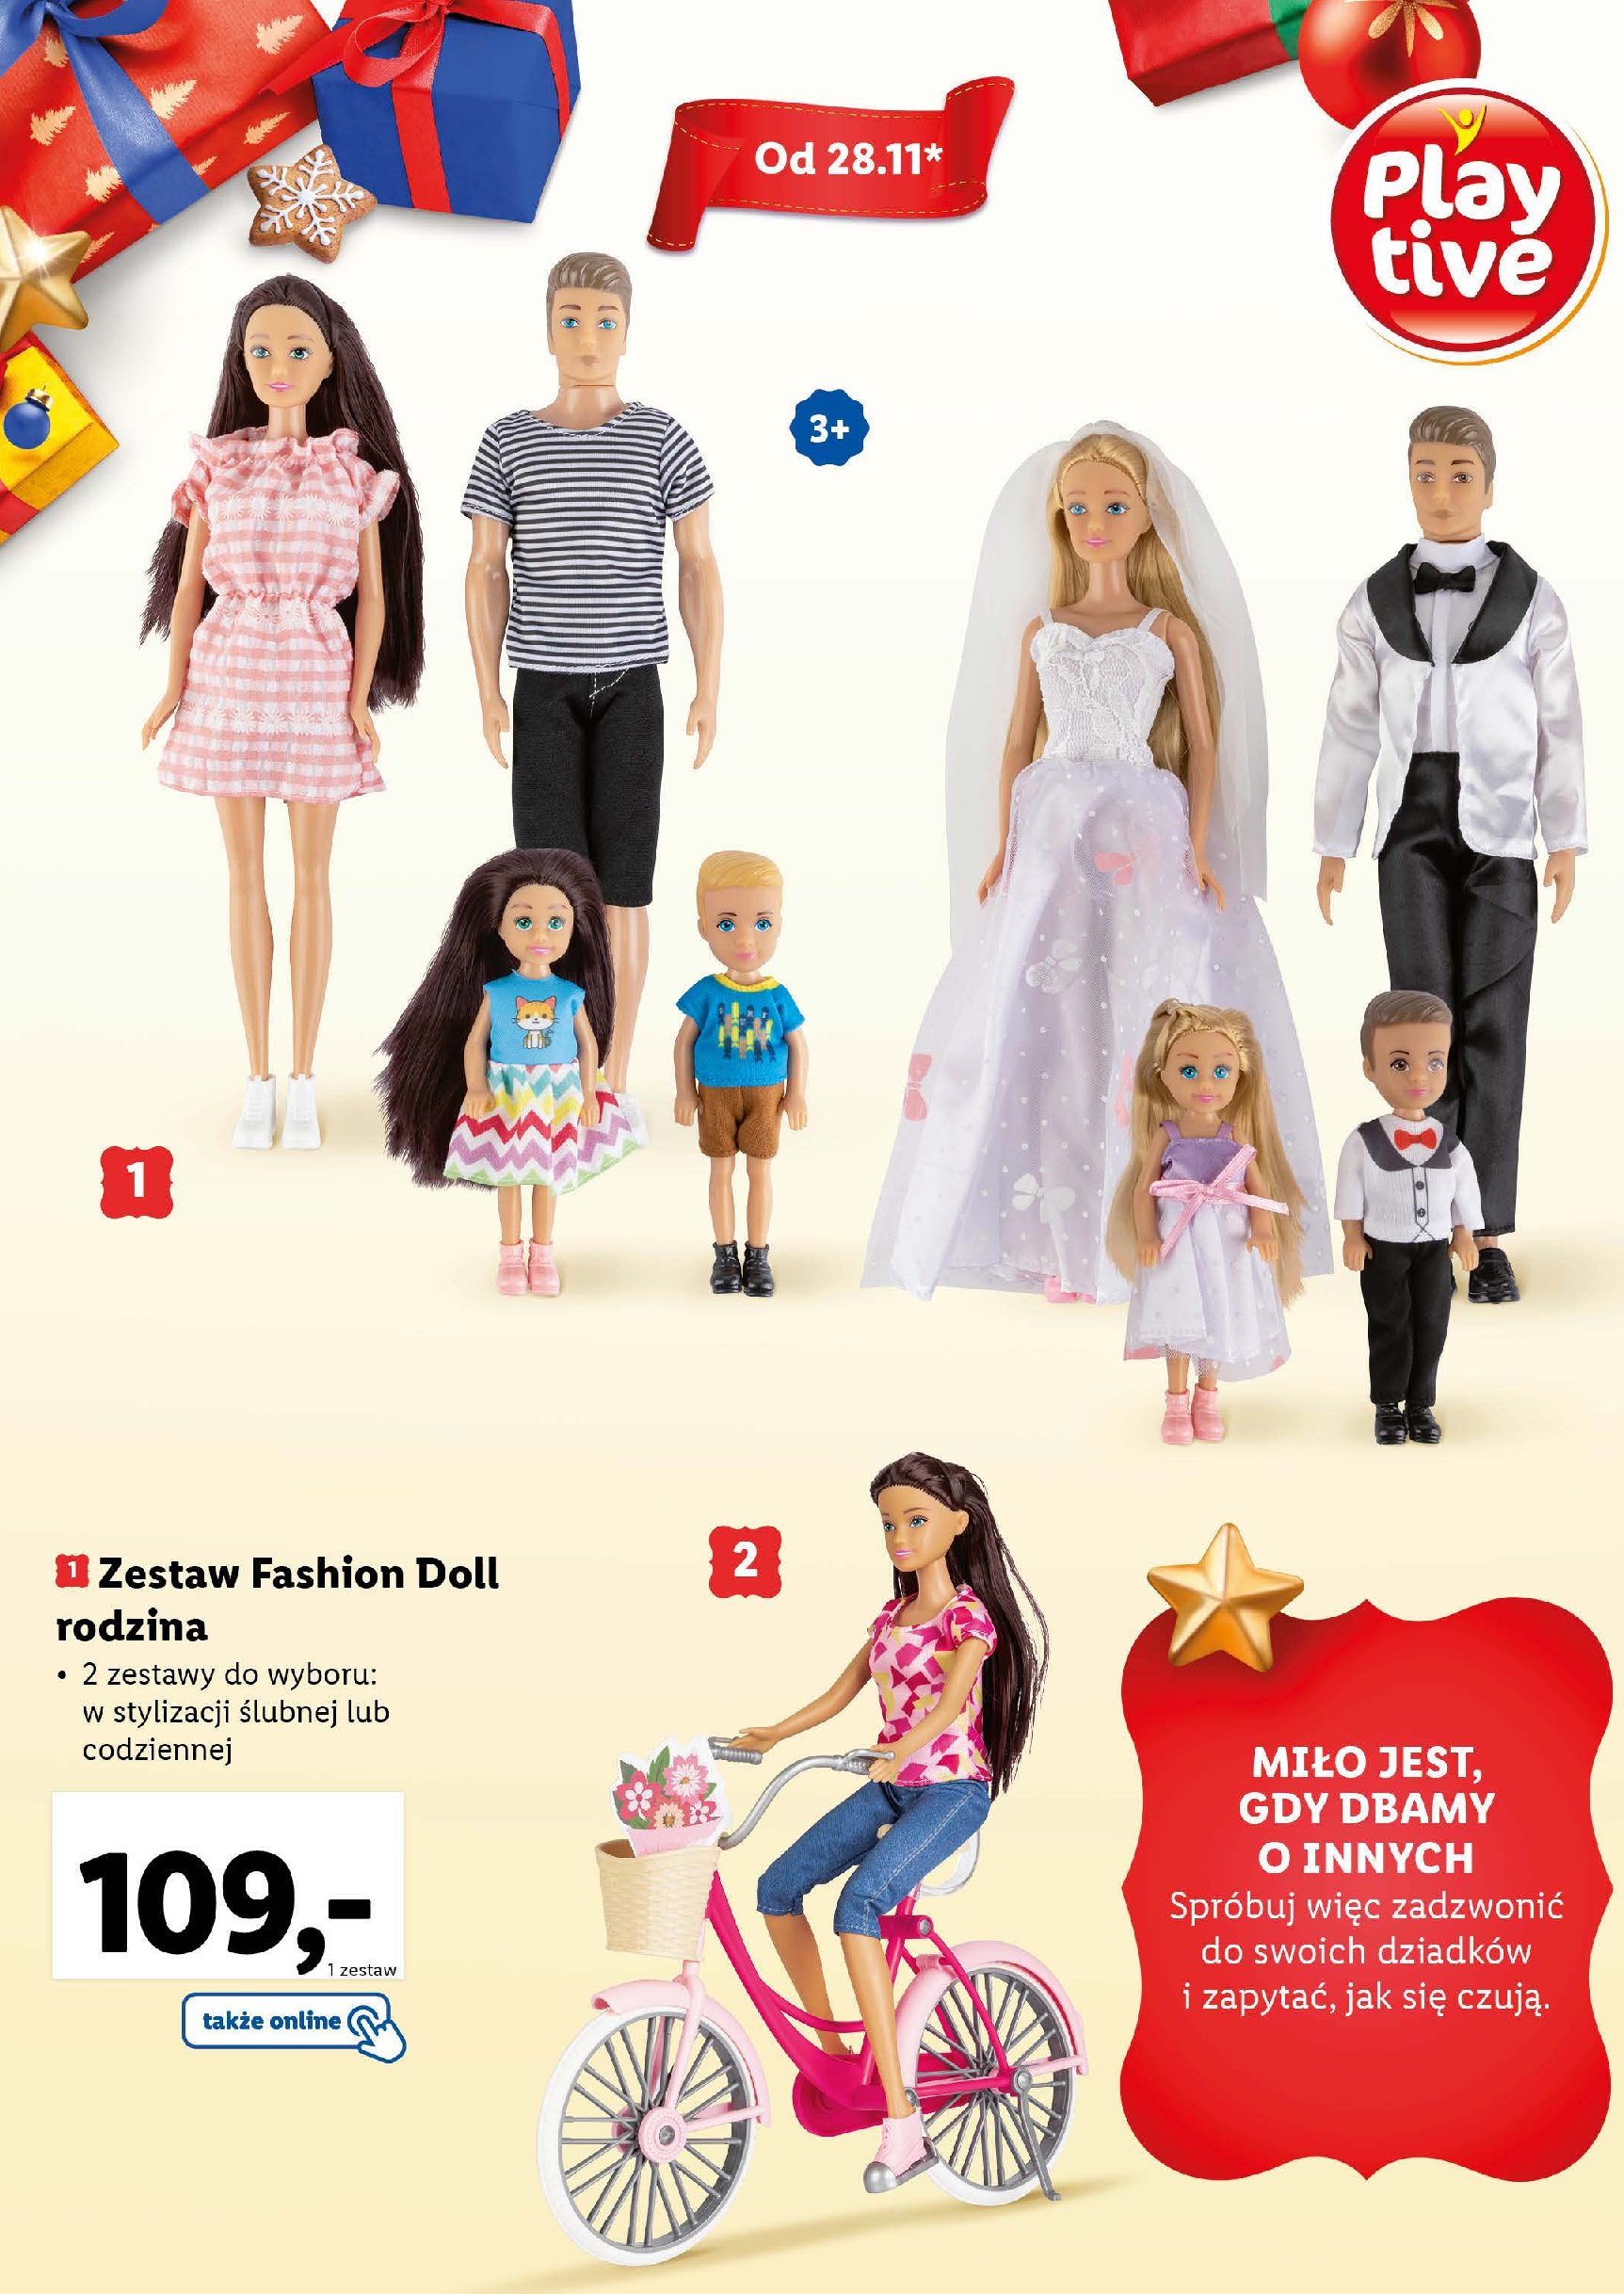 Zestaw fashion doll rodzina w stylizacji codziennej Playtive promocja